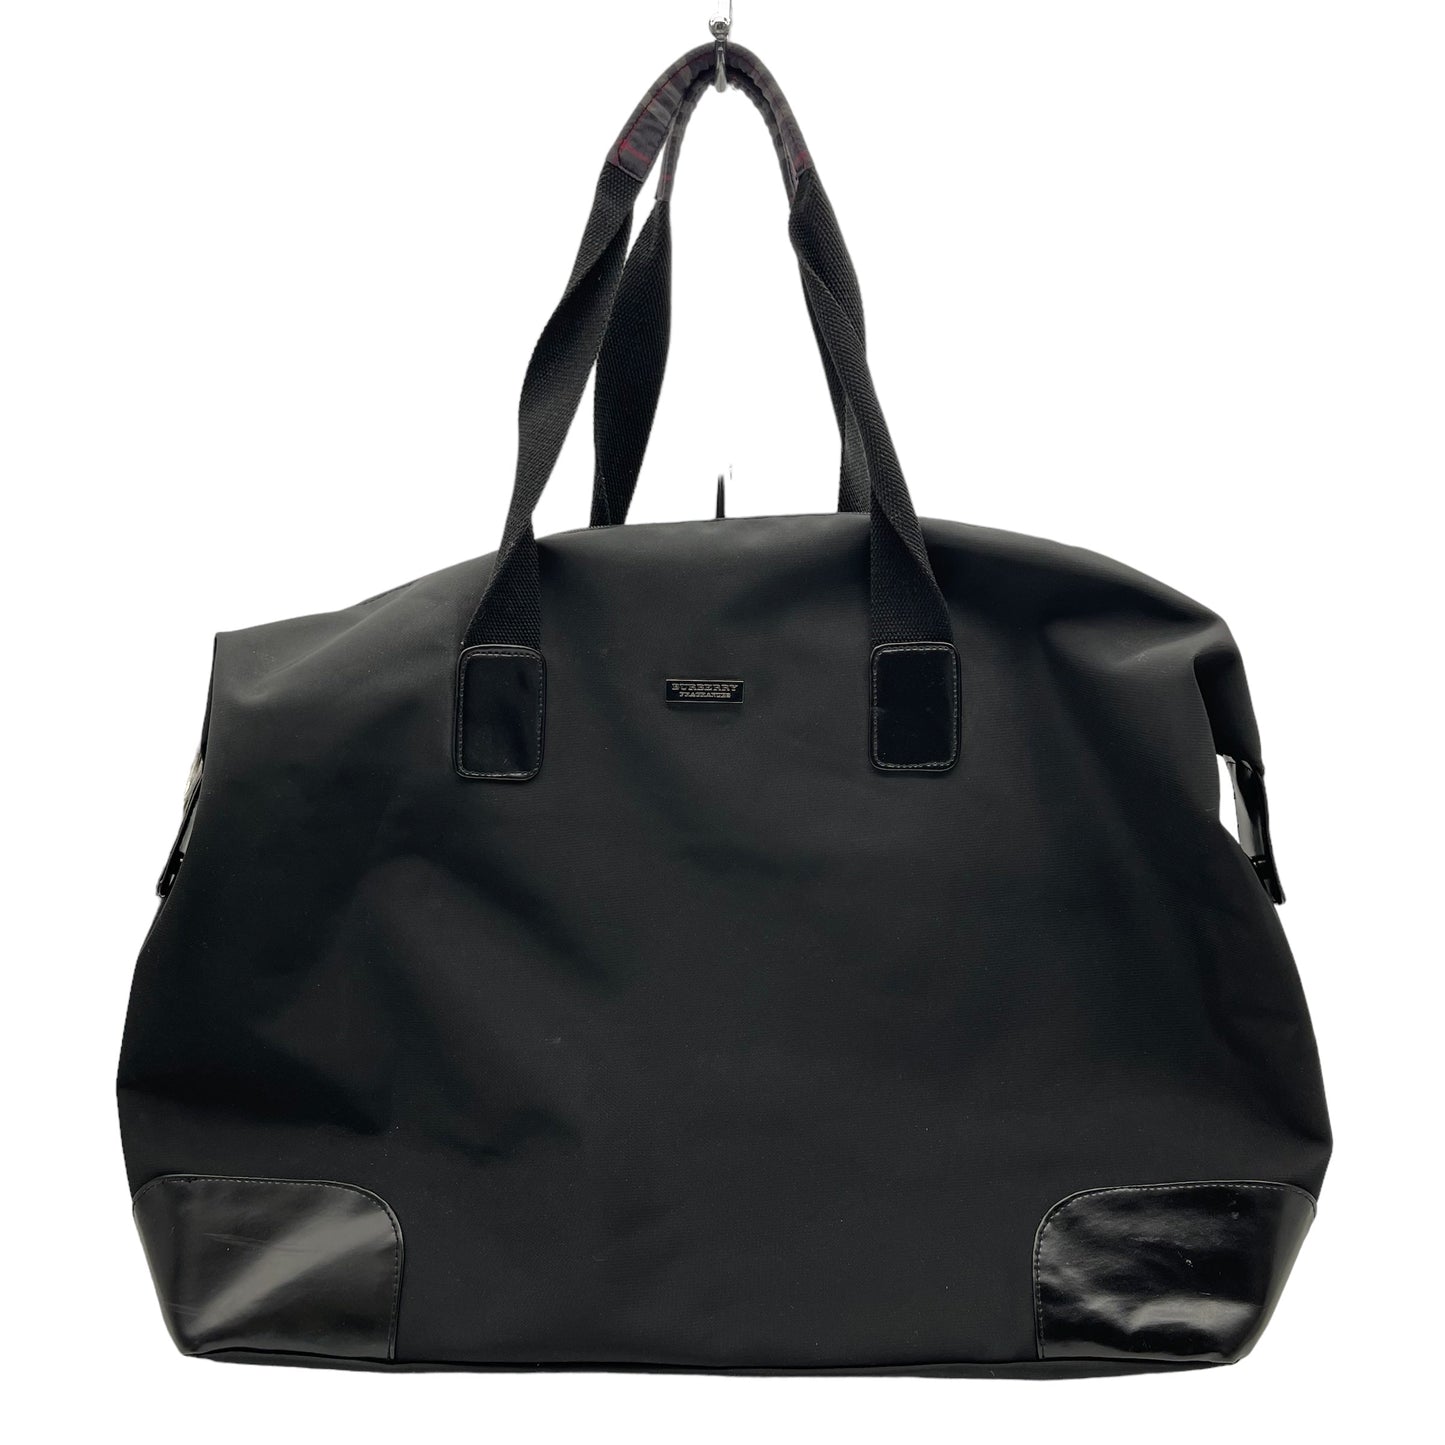 Handbag Designer Burberry, Size Large